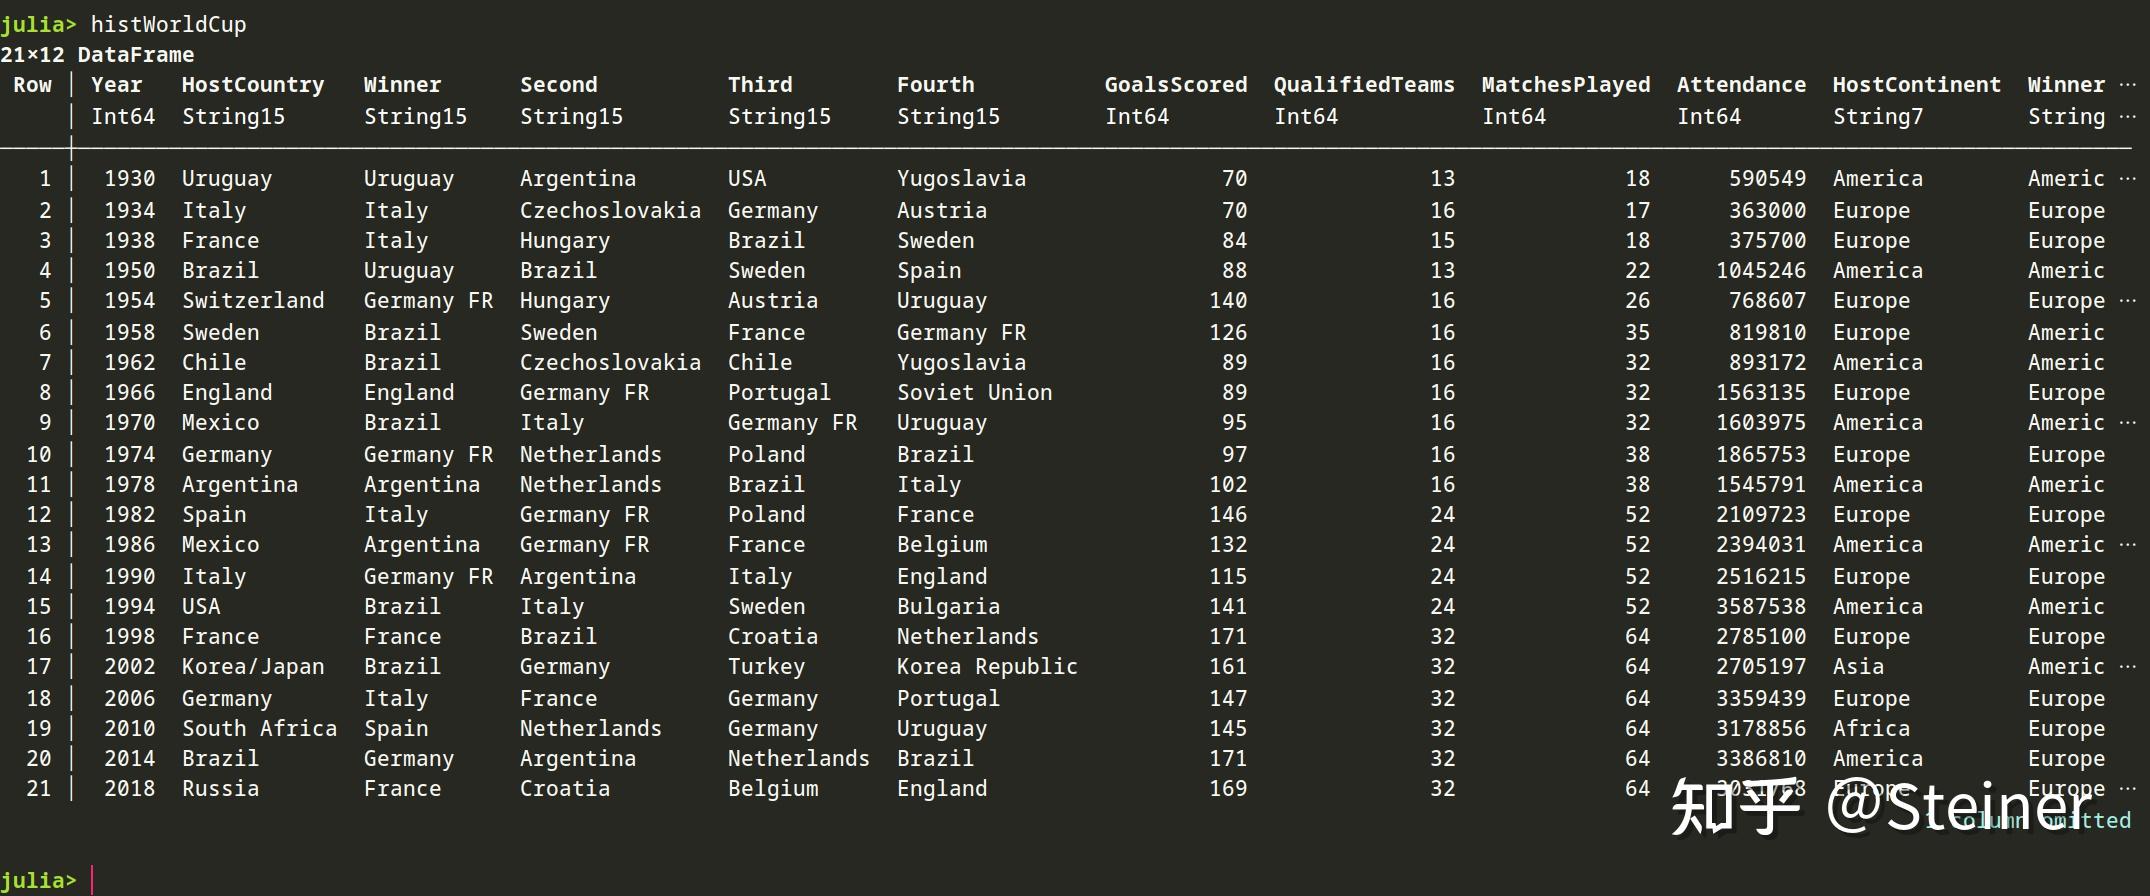 该数据表包含了从1930到2018年间共21届世界杯赛事的汇总信息（1942、1946两年因二战停办）